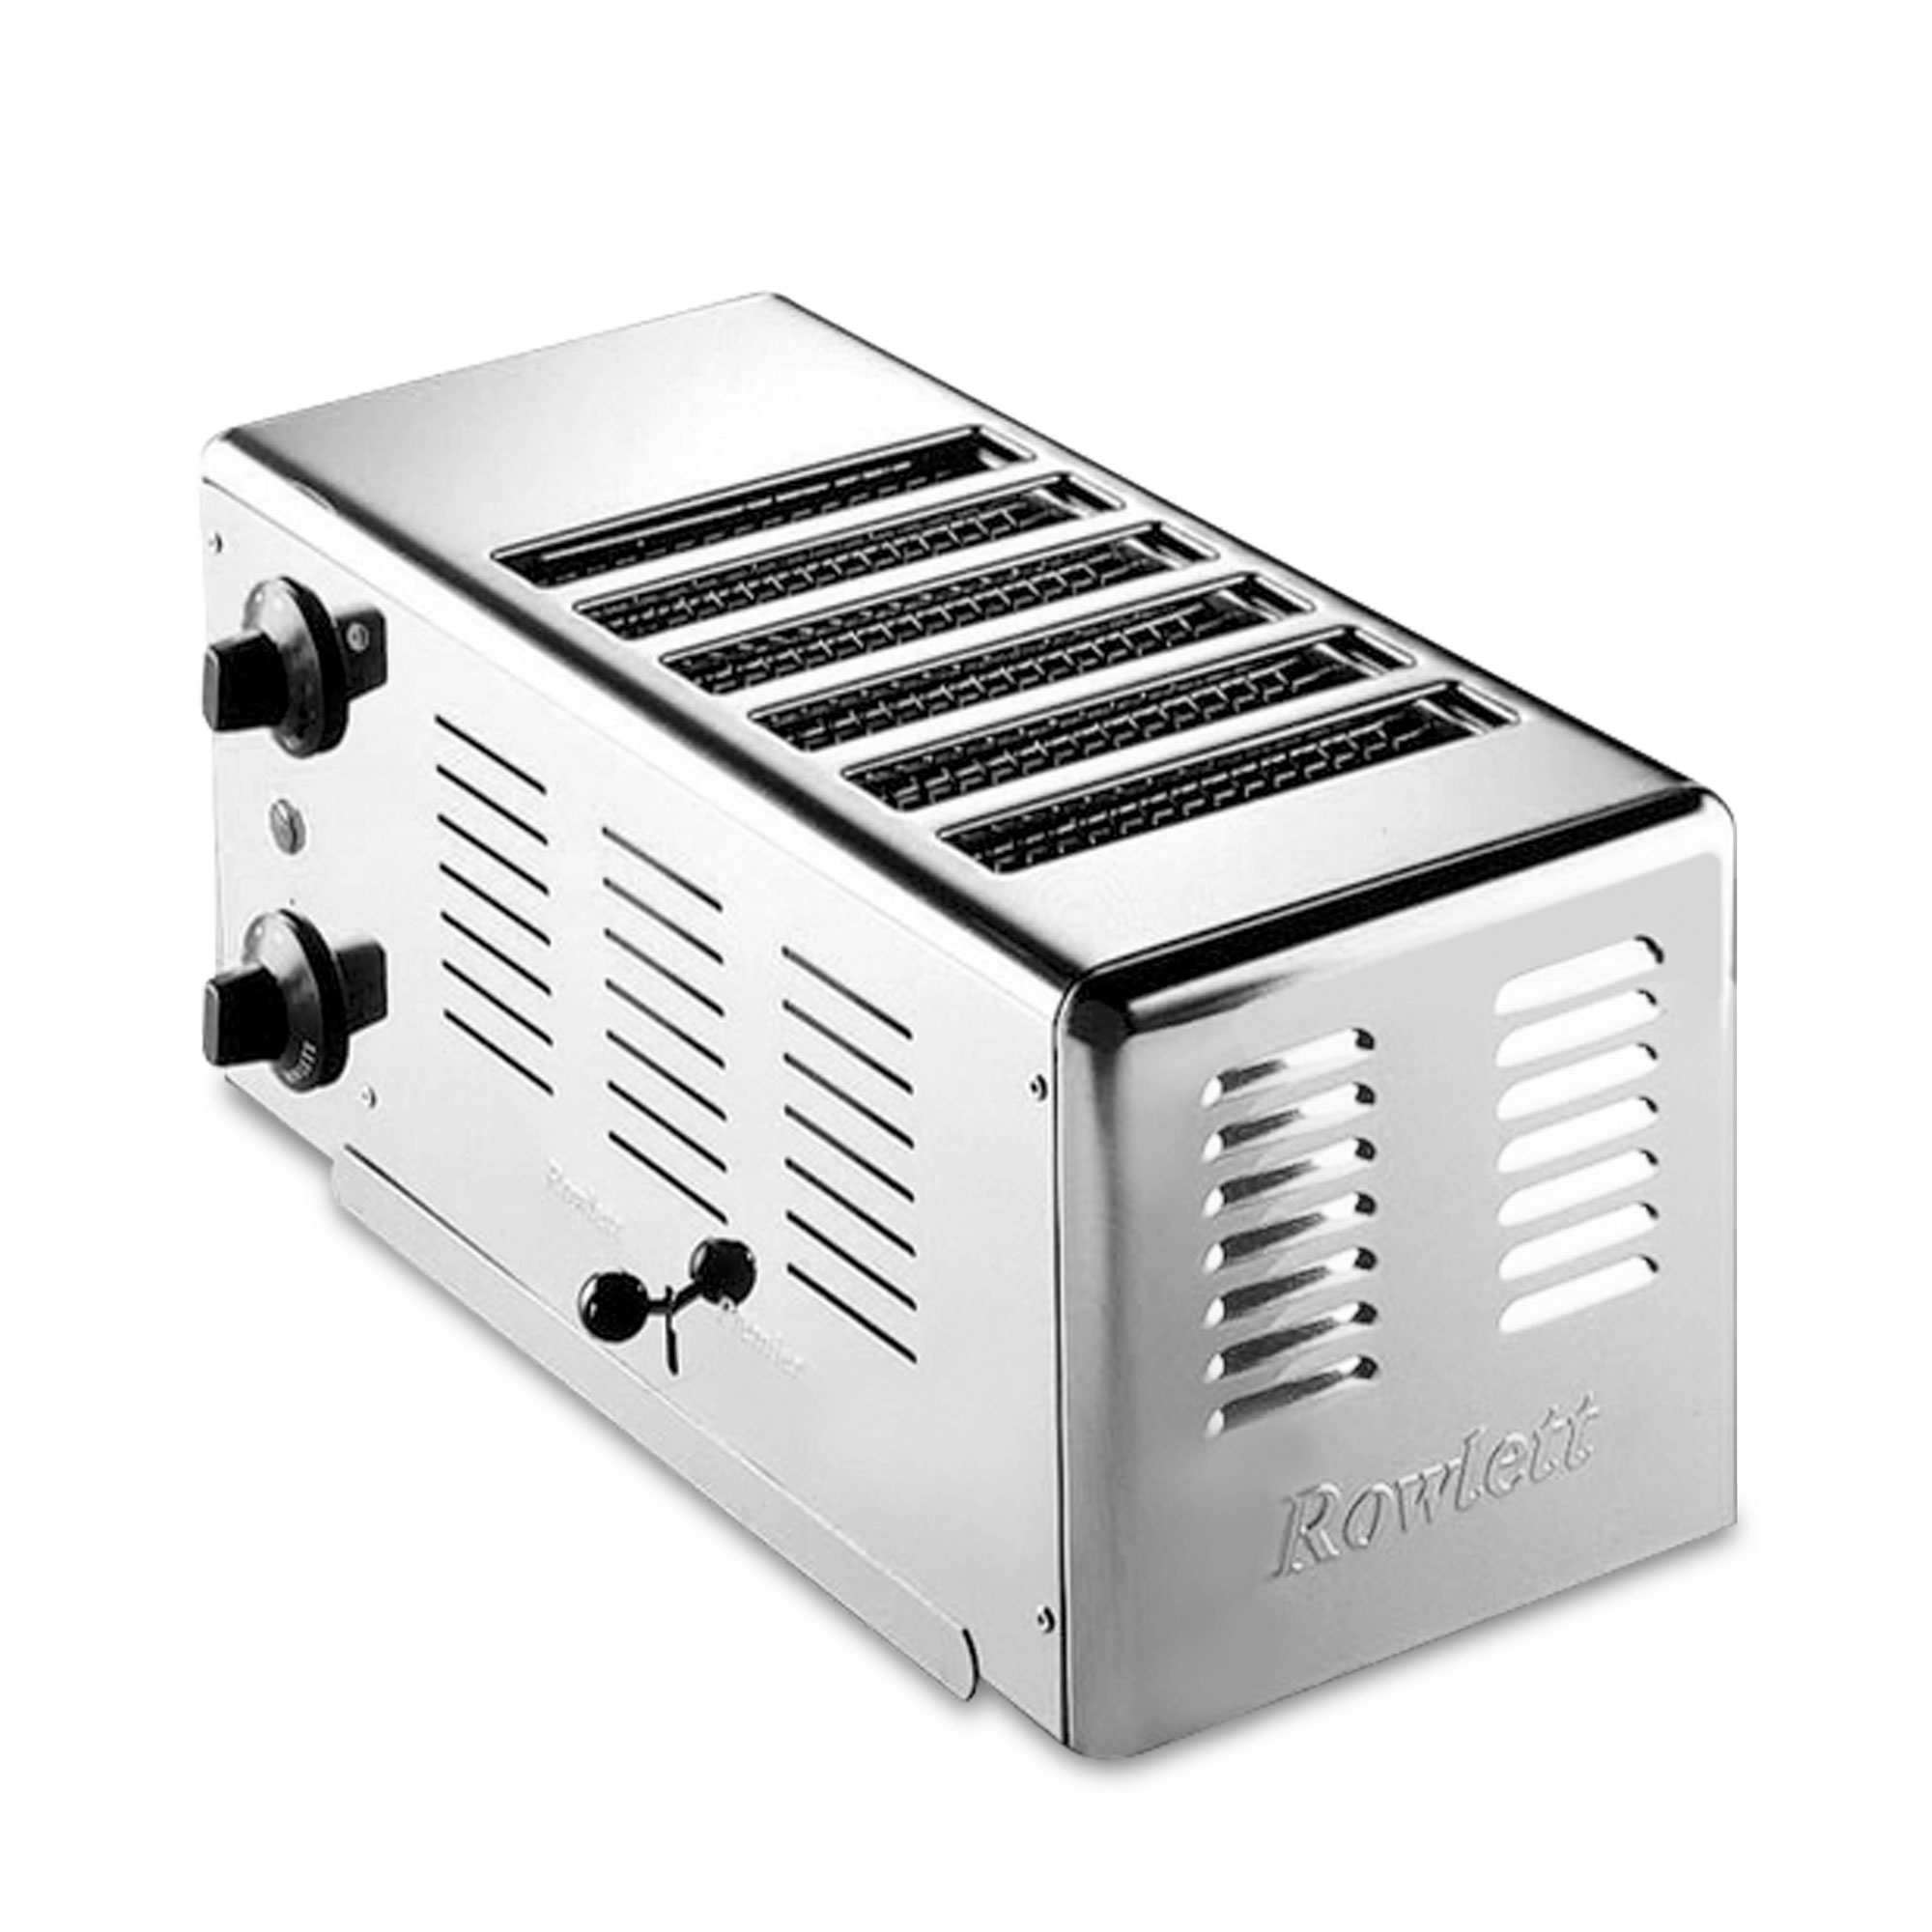 Gastroback Rowlett Toaster 6 slot Premier 42006 4016432420060 42006 (4016432420060) Tosteris